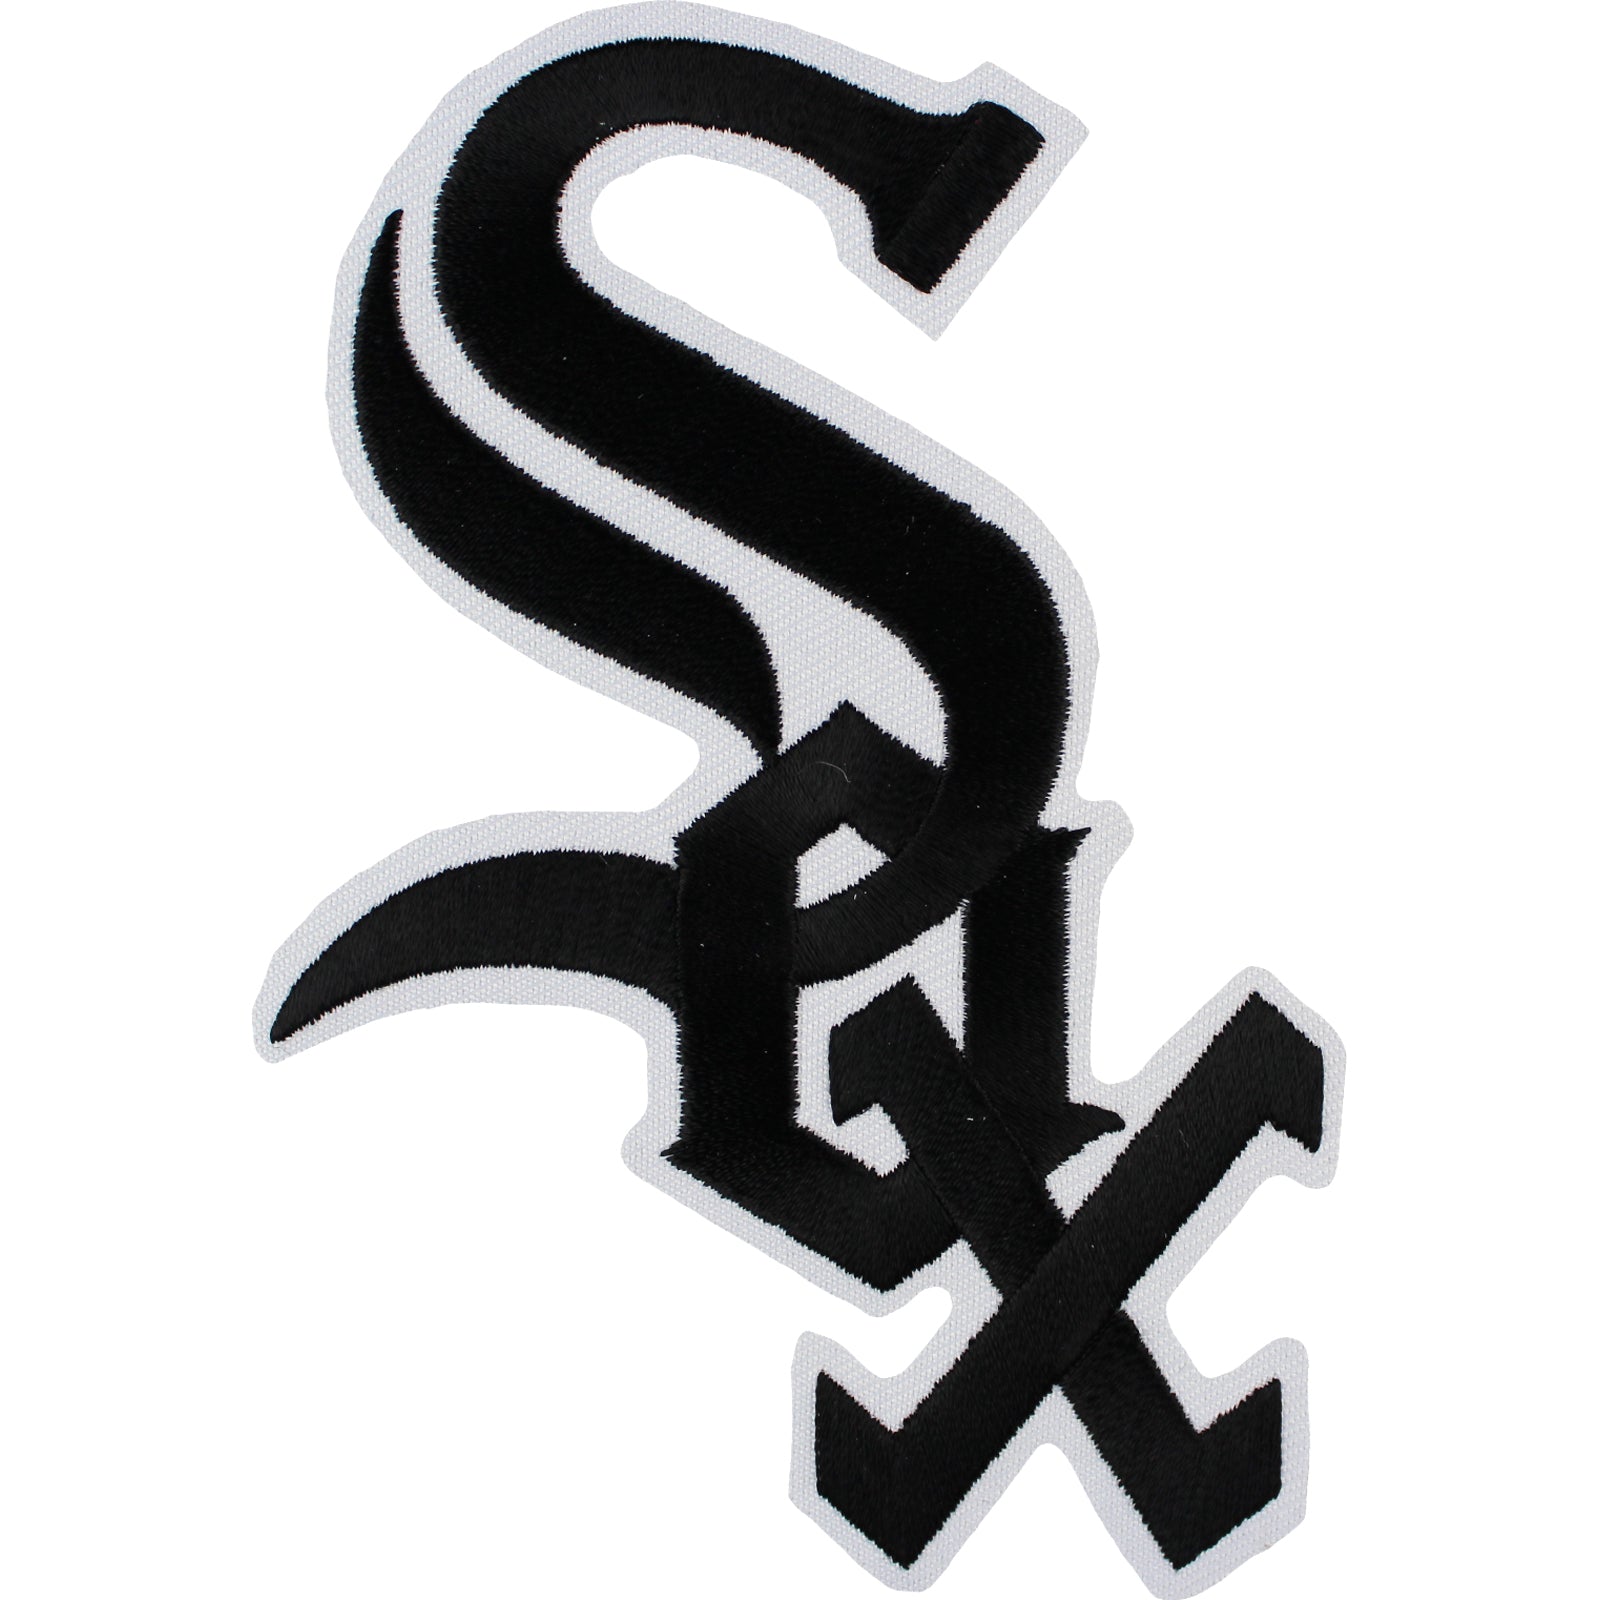 Soxican T-Shirt  White sox logo, Chicago sports teams logo, Retro